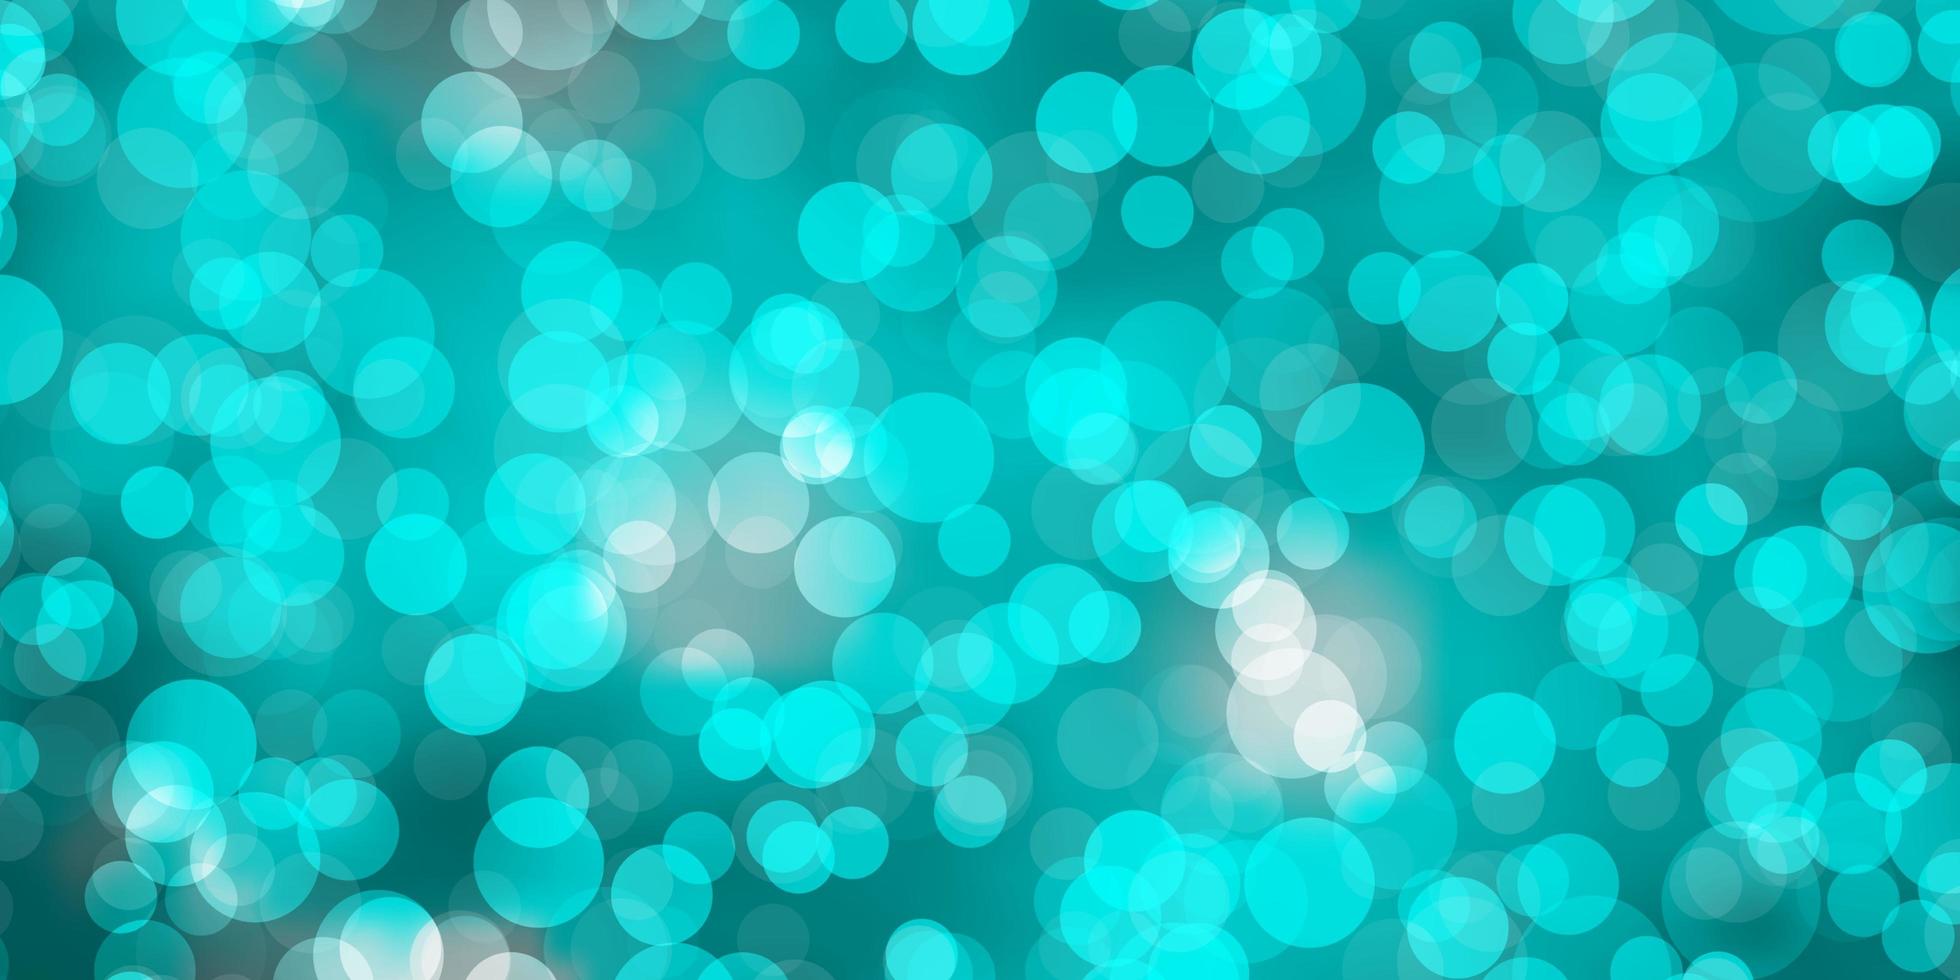 ljusblå grön vektormall med cirklar glitter abstrakt illustration med färgglada droppar mönster för broschyrer broschyrer vektor